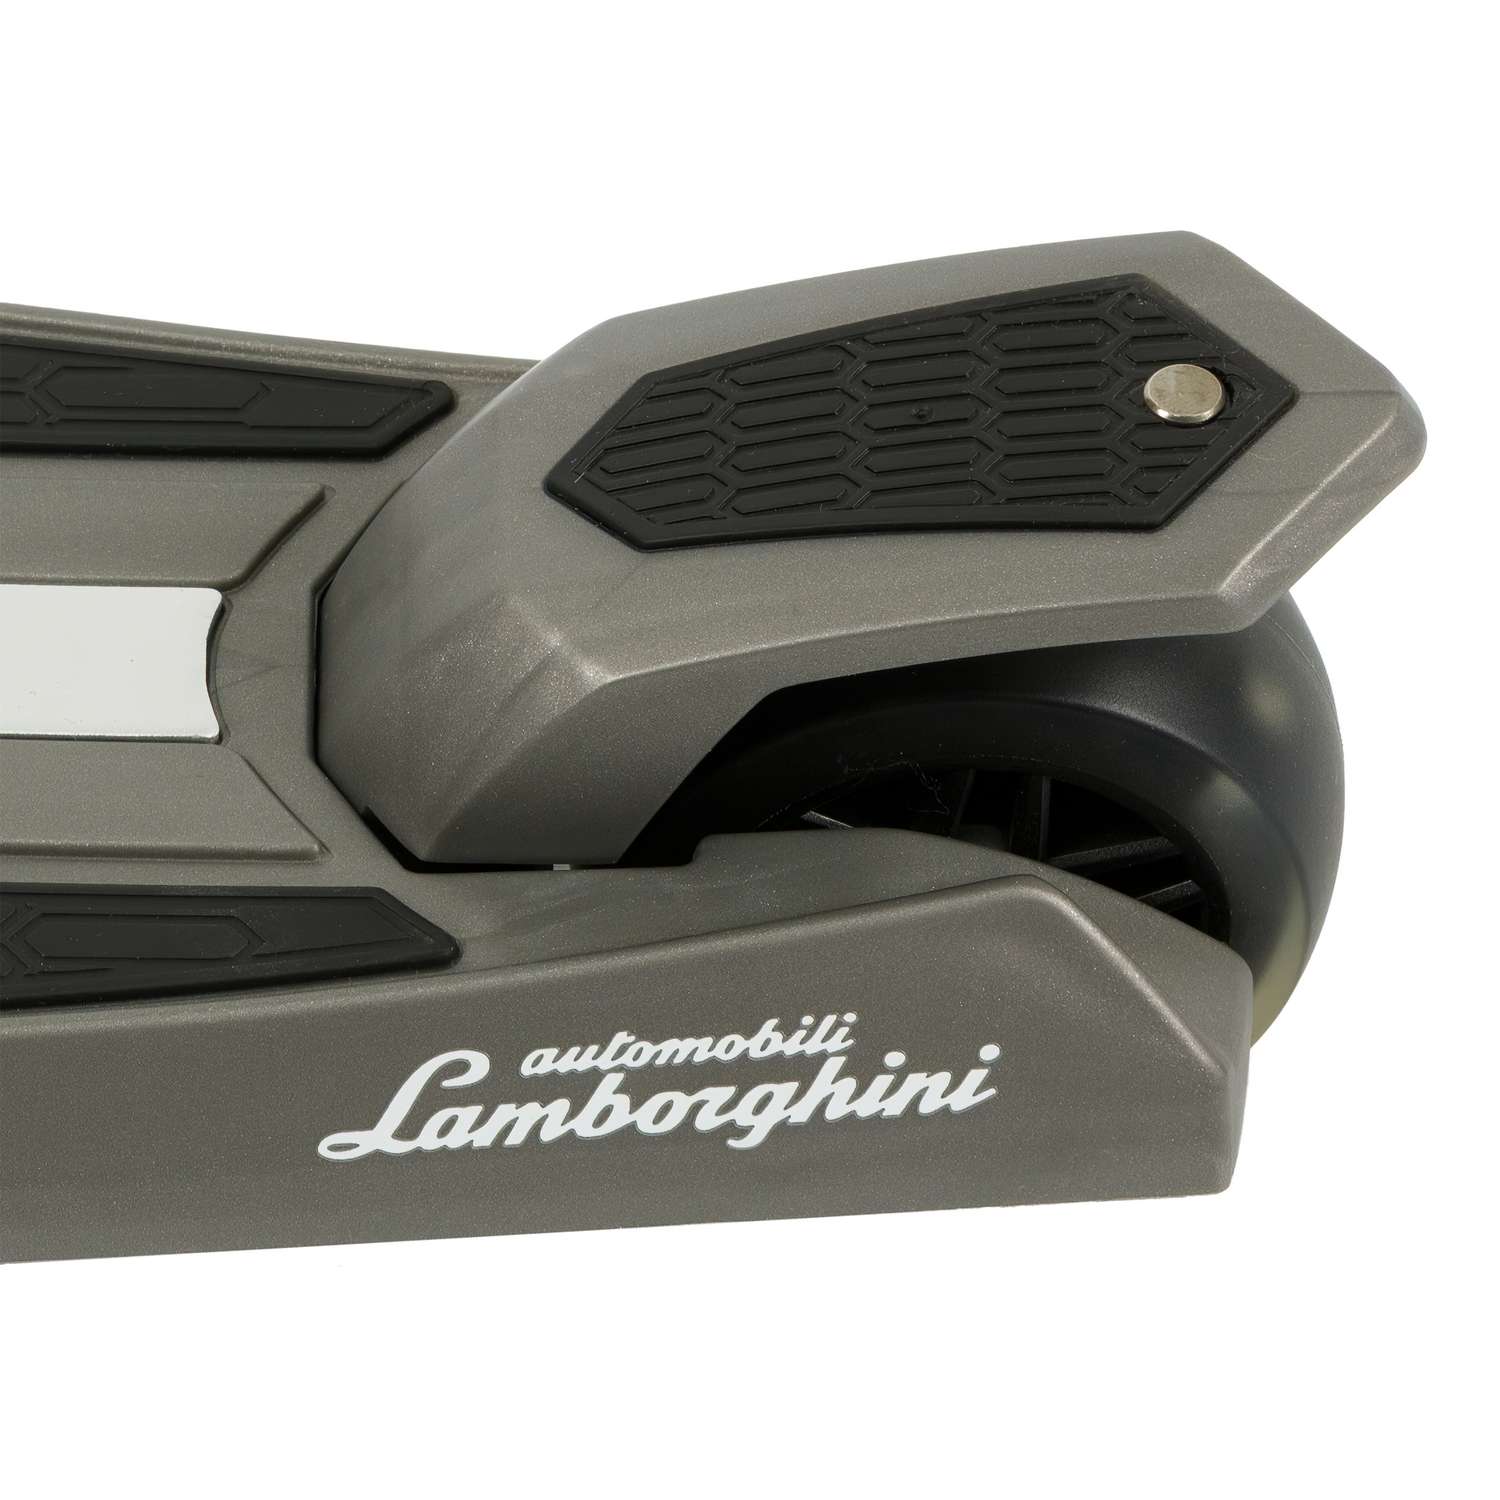 Самокат Navigator Lamborghini Управление наклоном со световыми эффектами Серый - фото 4